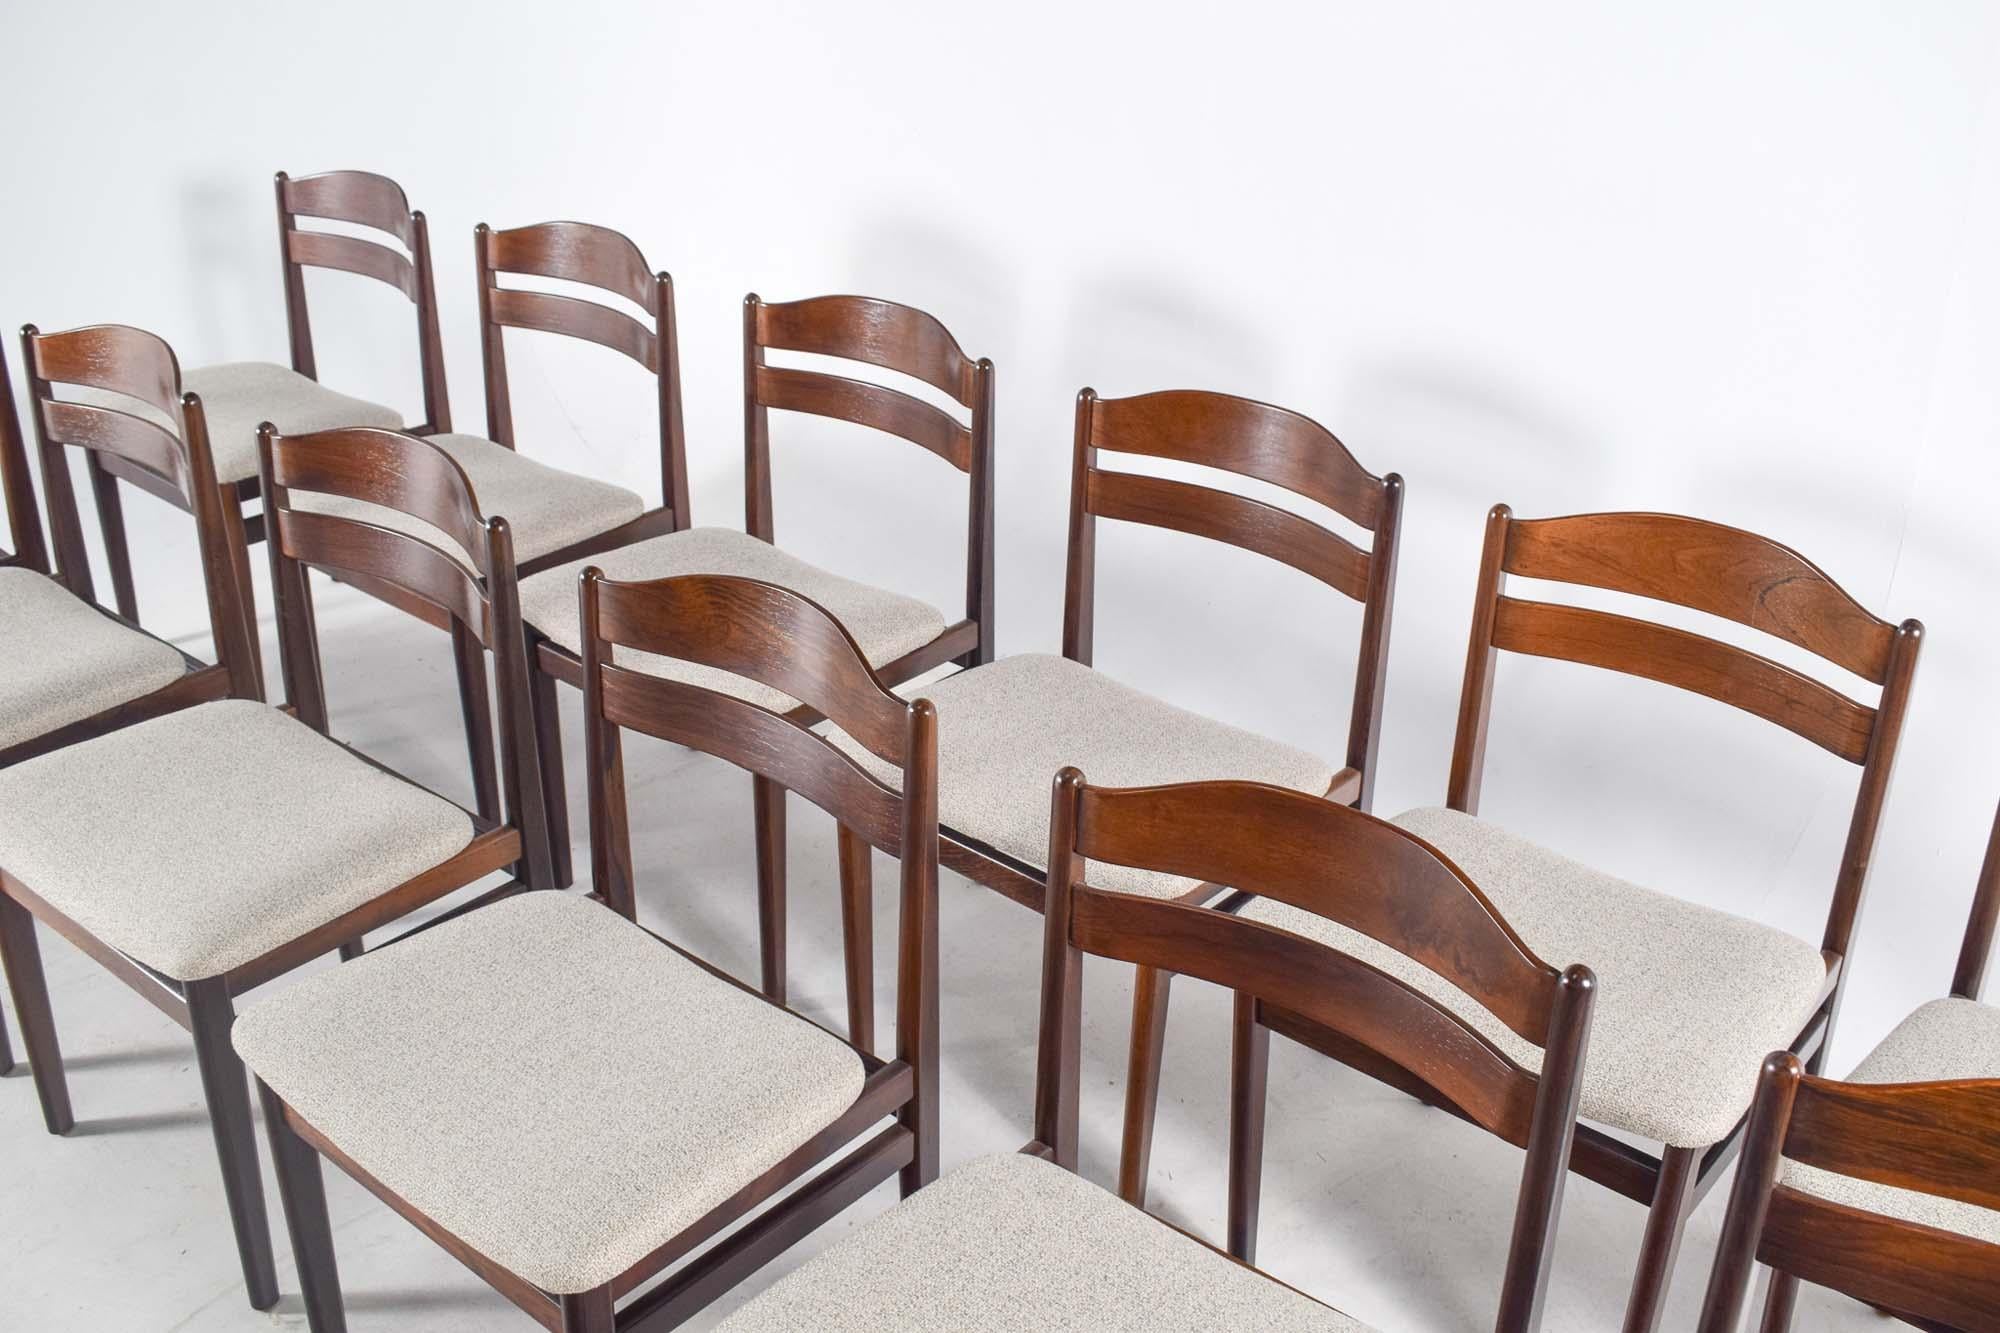 Dieses exquisite Set aus 12 Esszimmerstühlen von B.S. Møbler verkörpert die zeitlose Eleganz des Designs aus der Mitte des Jahrhunderts. Diese Stühle aus warmem, reichem Palisanderholz weisen die für diese Epoche charakteristischen klaren Linien und